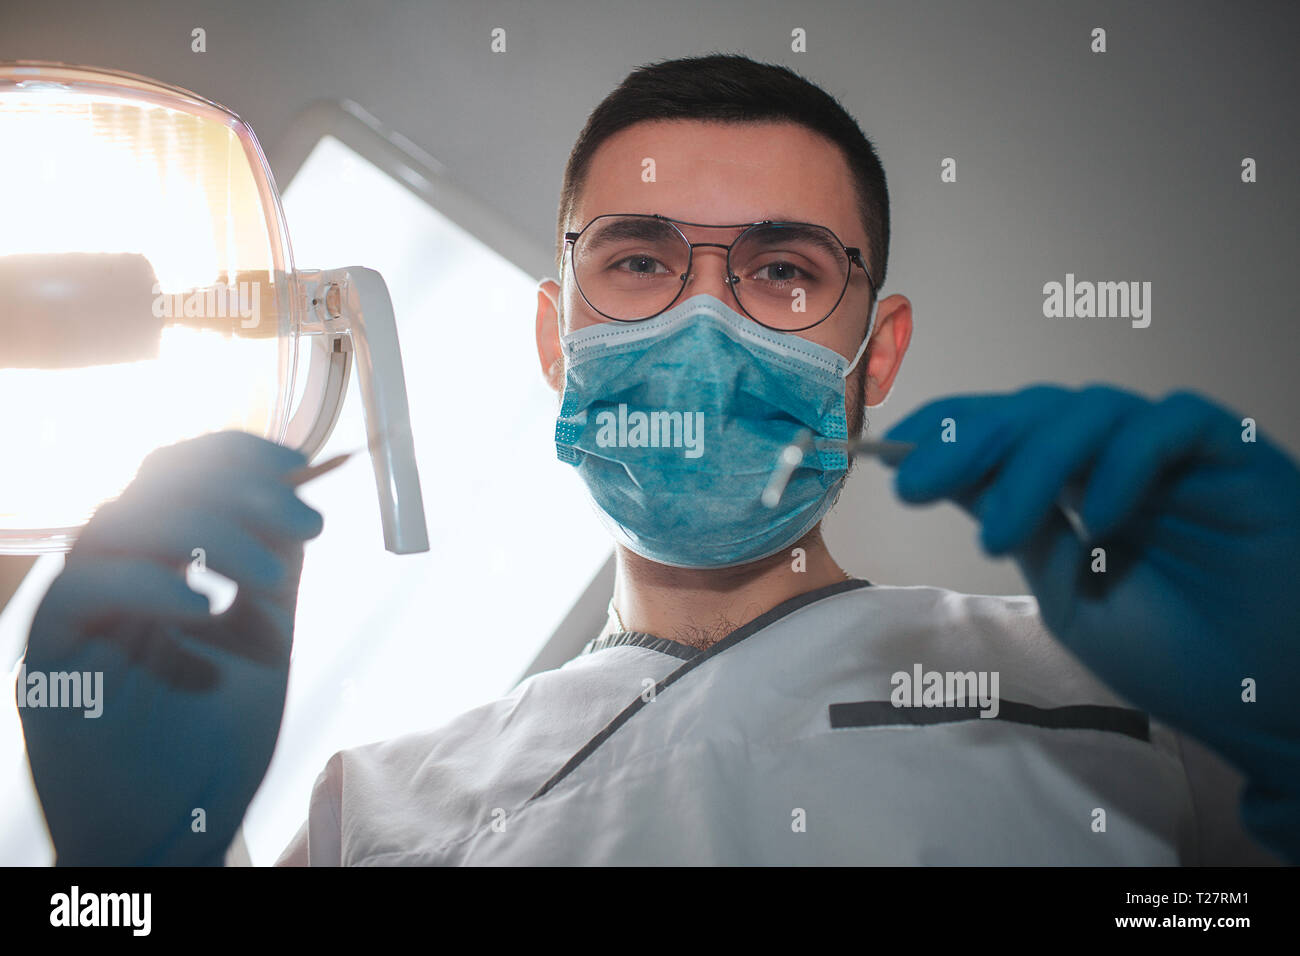 Junge männliche Zahnarzt sehen Sie auf Kamera. Er trägt ein weißes Rob und blaue Maske. Kerl halten Zähne Ausrüstung für Behandlung. Die Lampe eingeschaltet ist. Zahnheilkunde Zimmer. Stockfoto